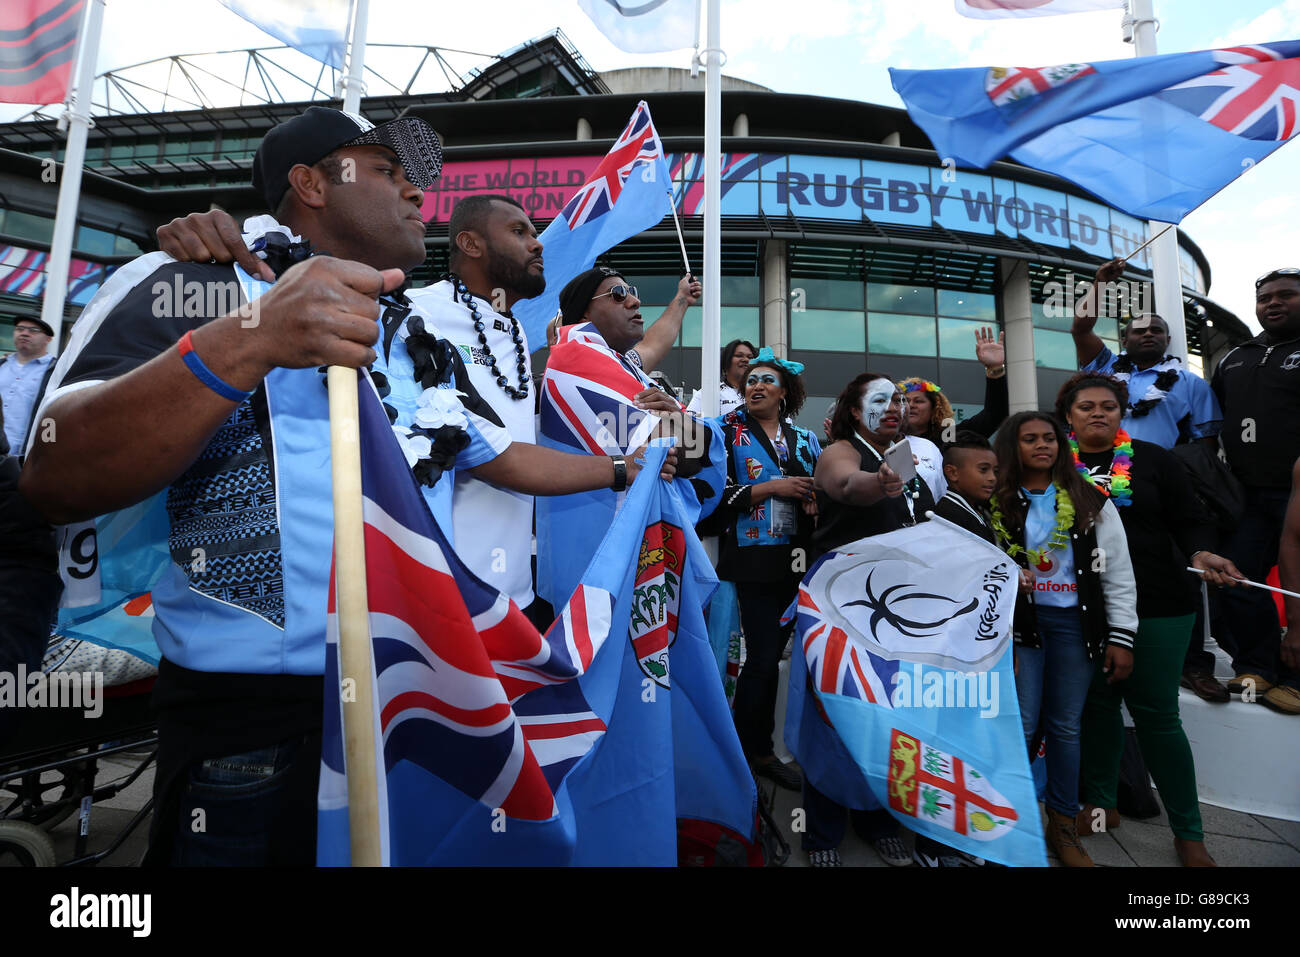 Rugby Union - Coppa del mondo di Rugby 2015 - Pool A - Fiji / Inghilterra - Stadio di Twickenham. I tifosi delle Figi mostrano il loro sostegno fuori terra prima della partita della Coppa del mondo di rugby al Twickenham Stadium di Londra. Foto Stock